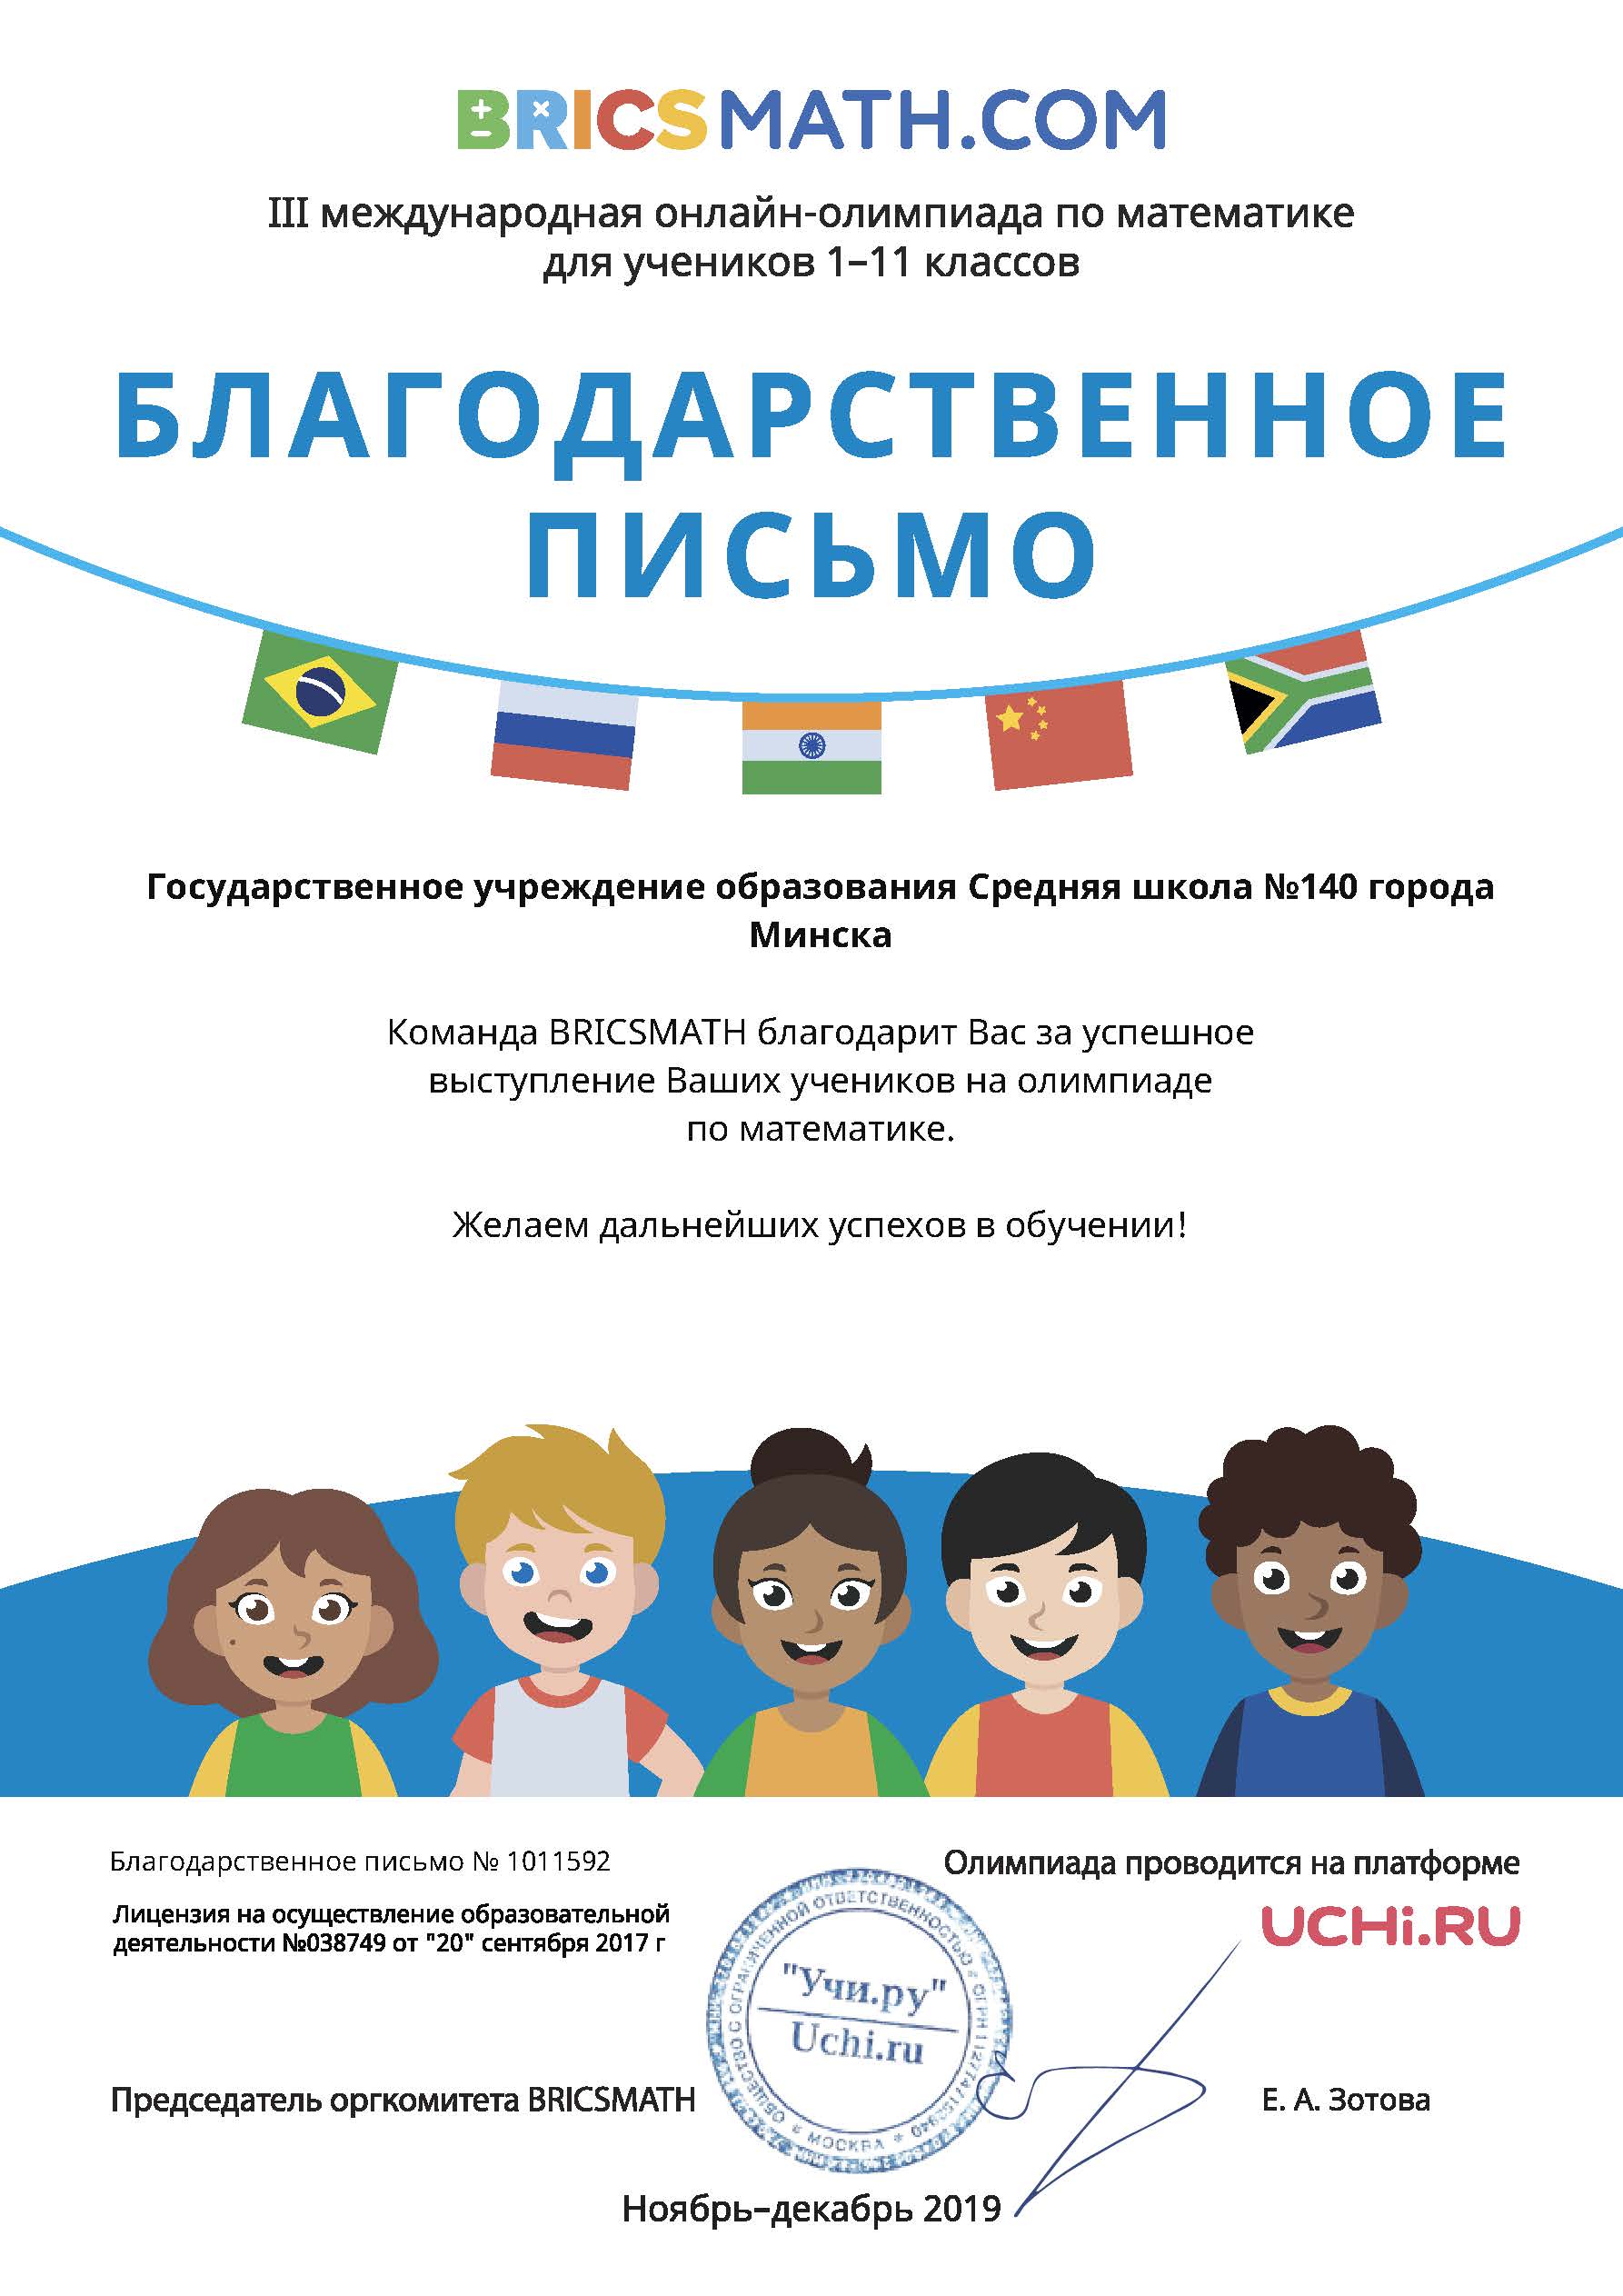 III международная онлайн-олимпиада по математике для учеников 1–11 классов BRICSMATH.COM